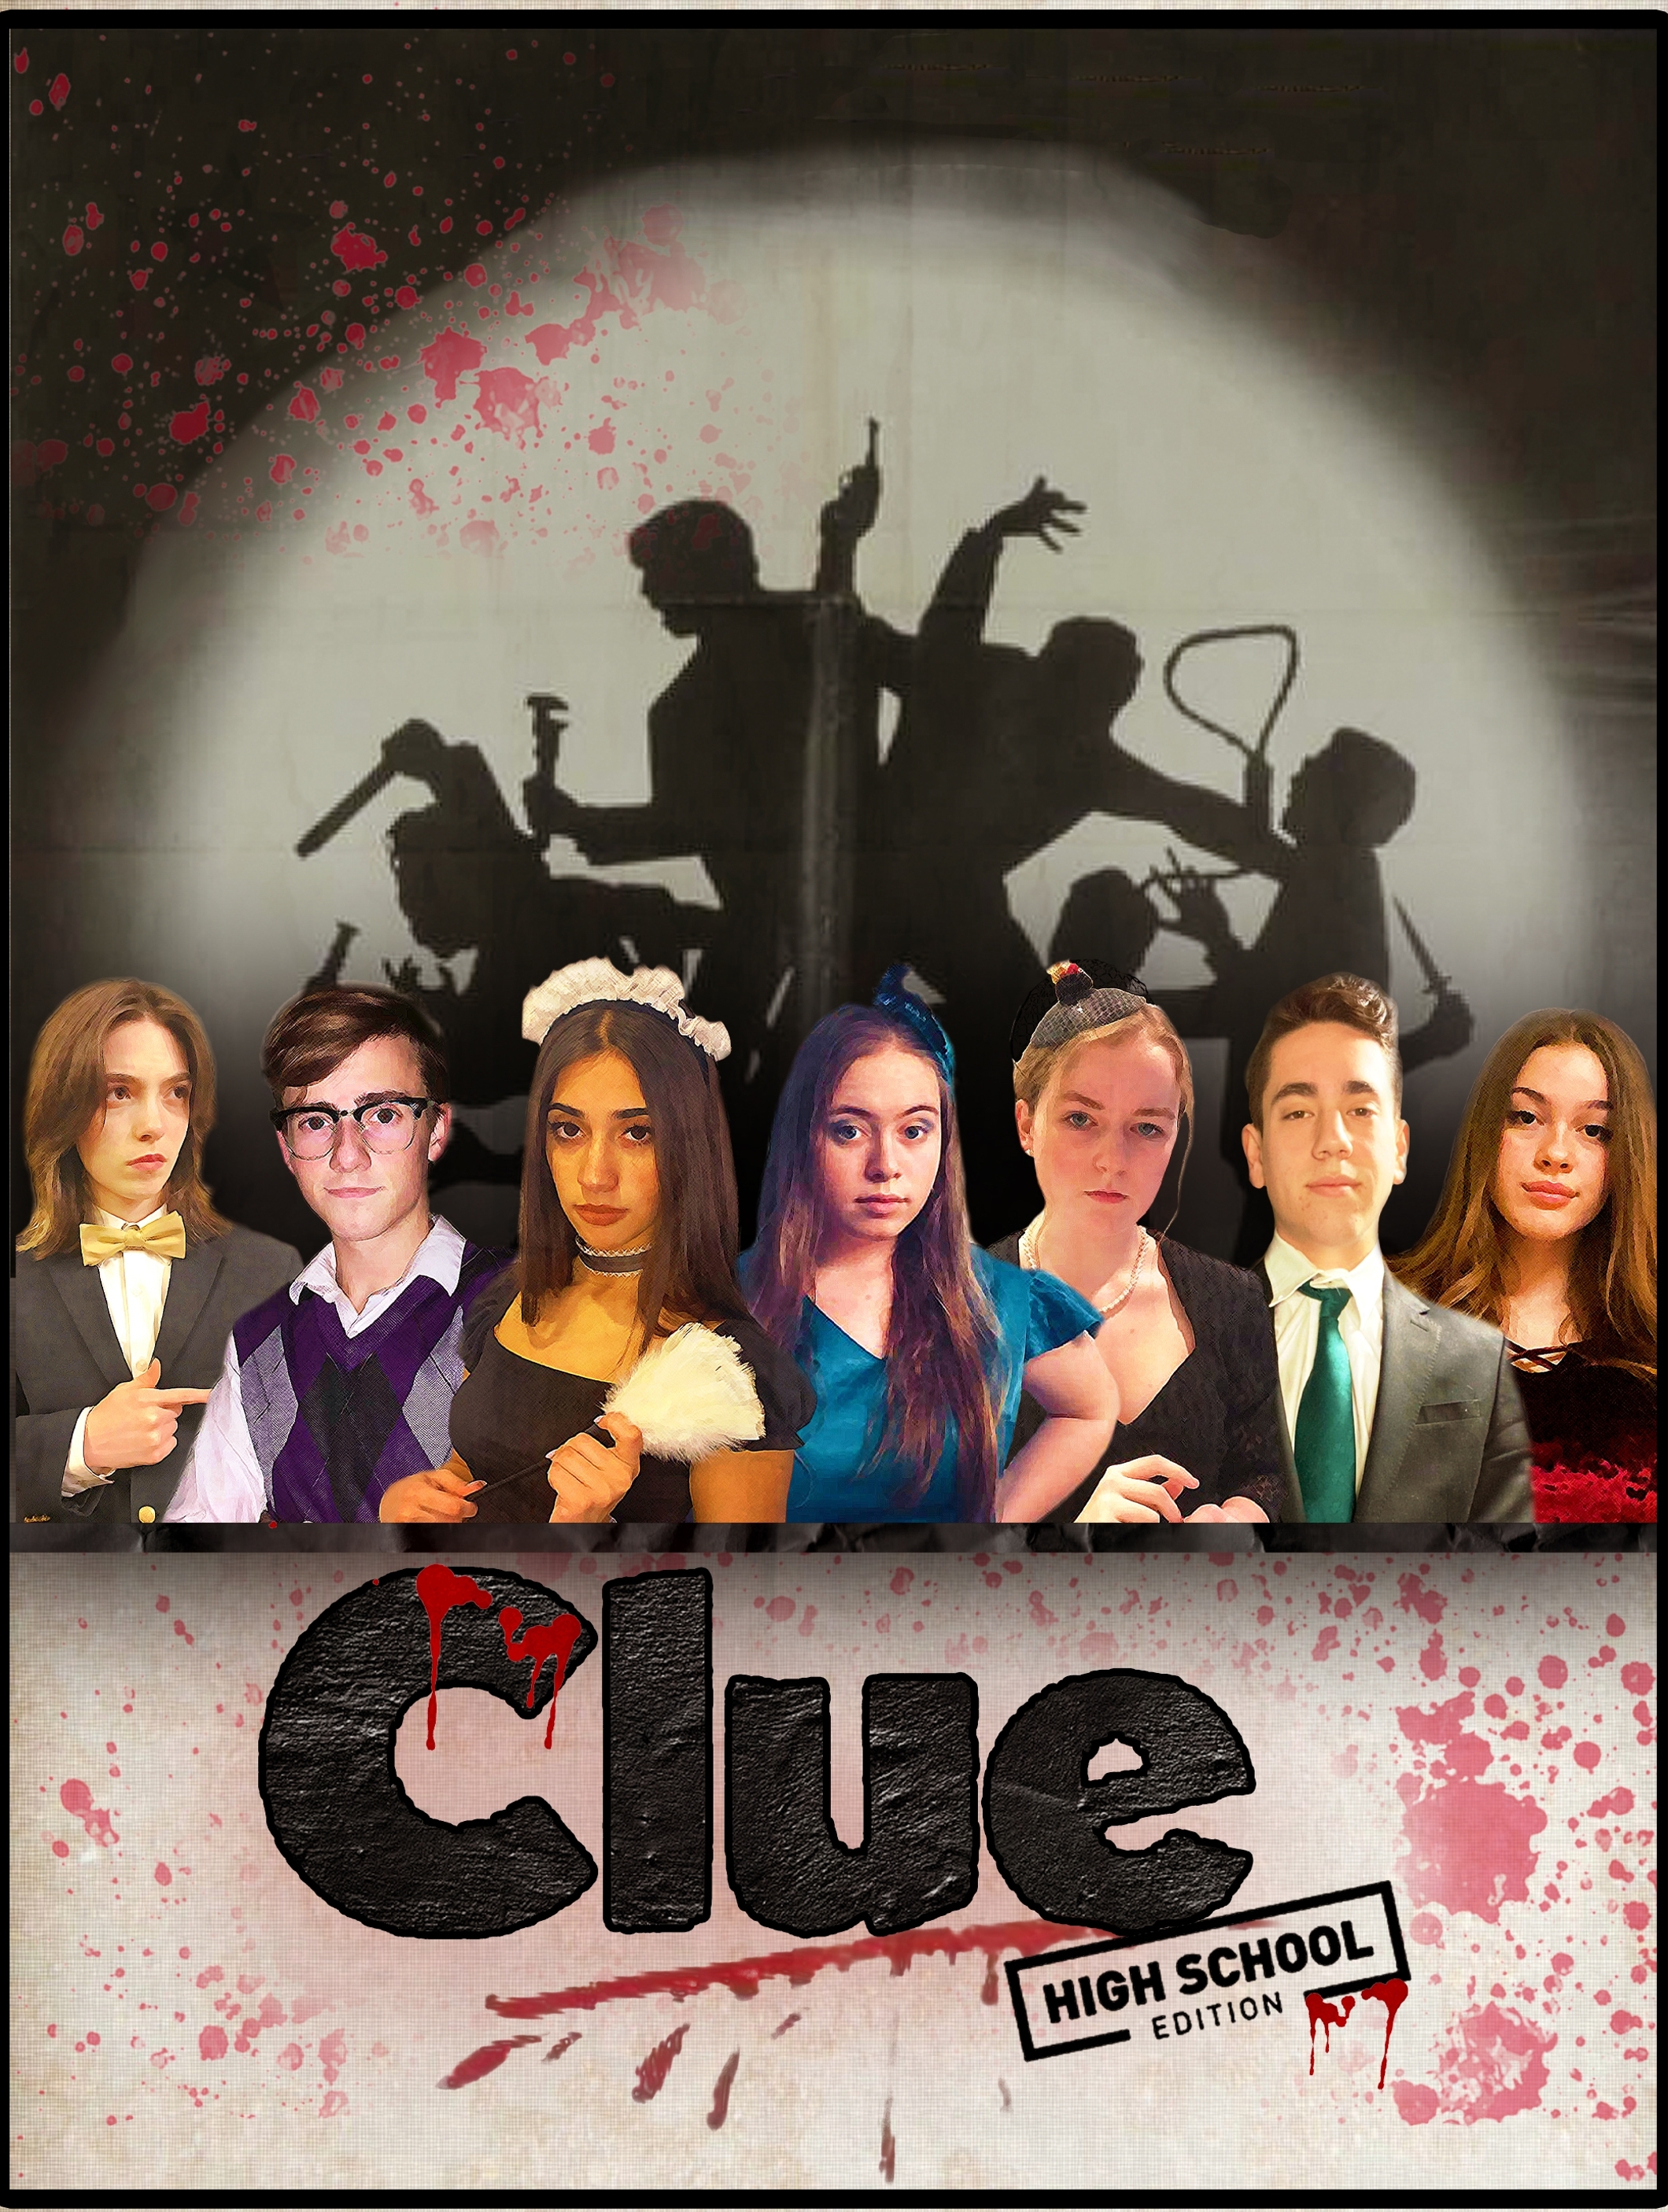 clue cast